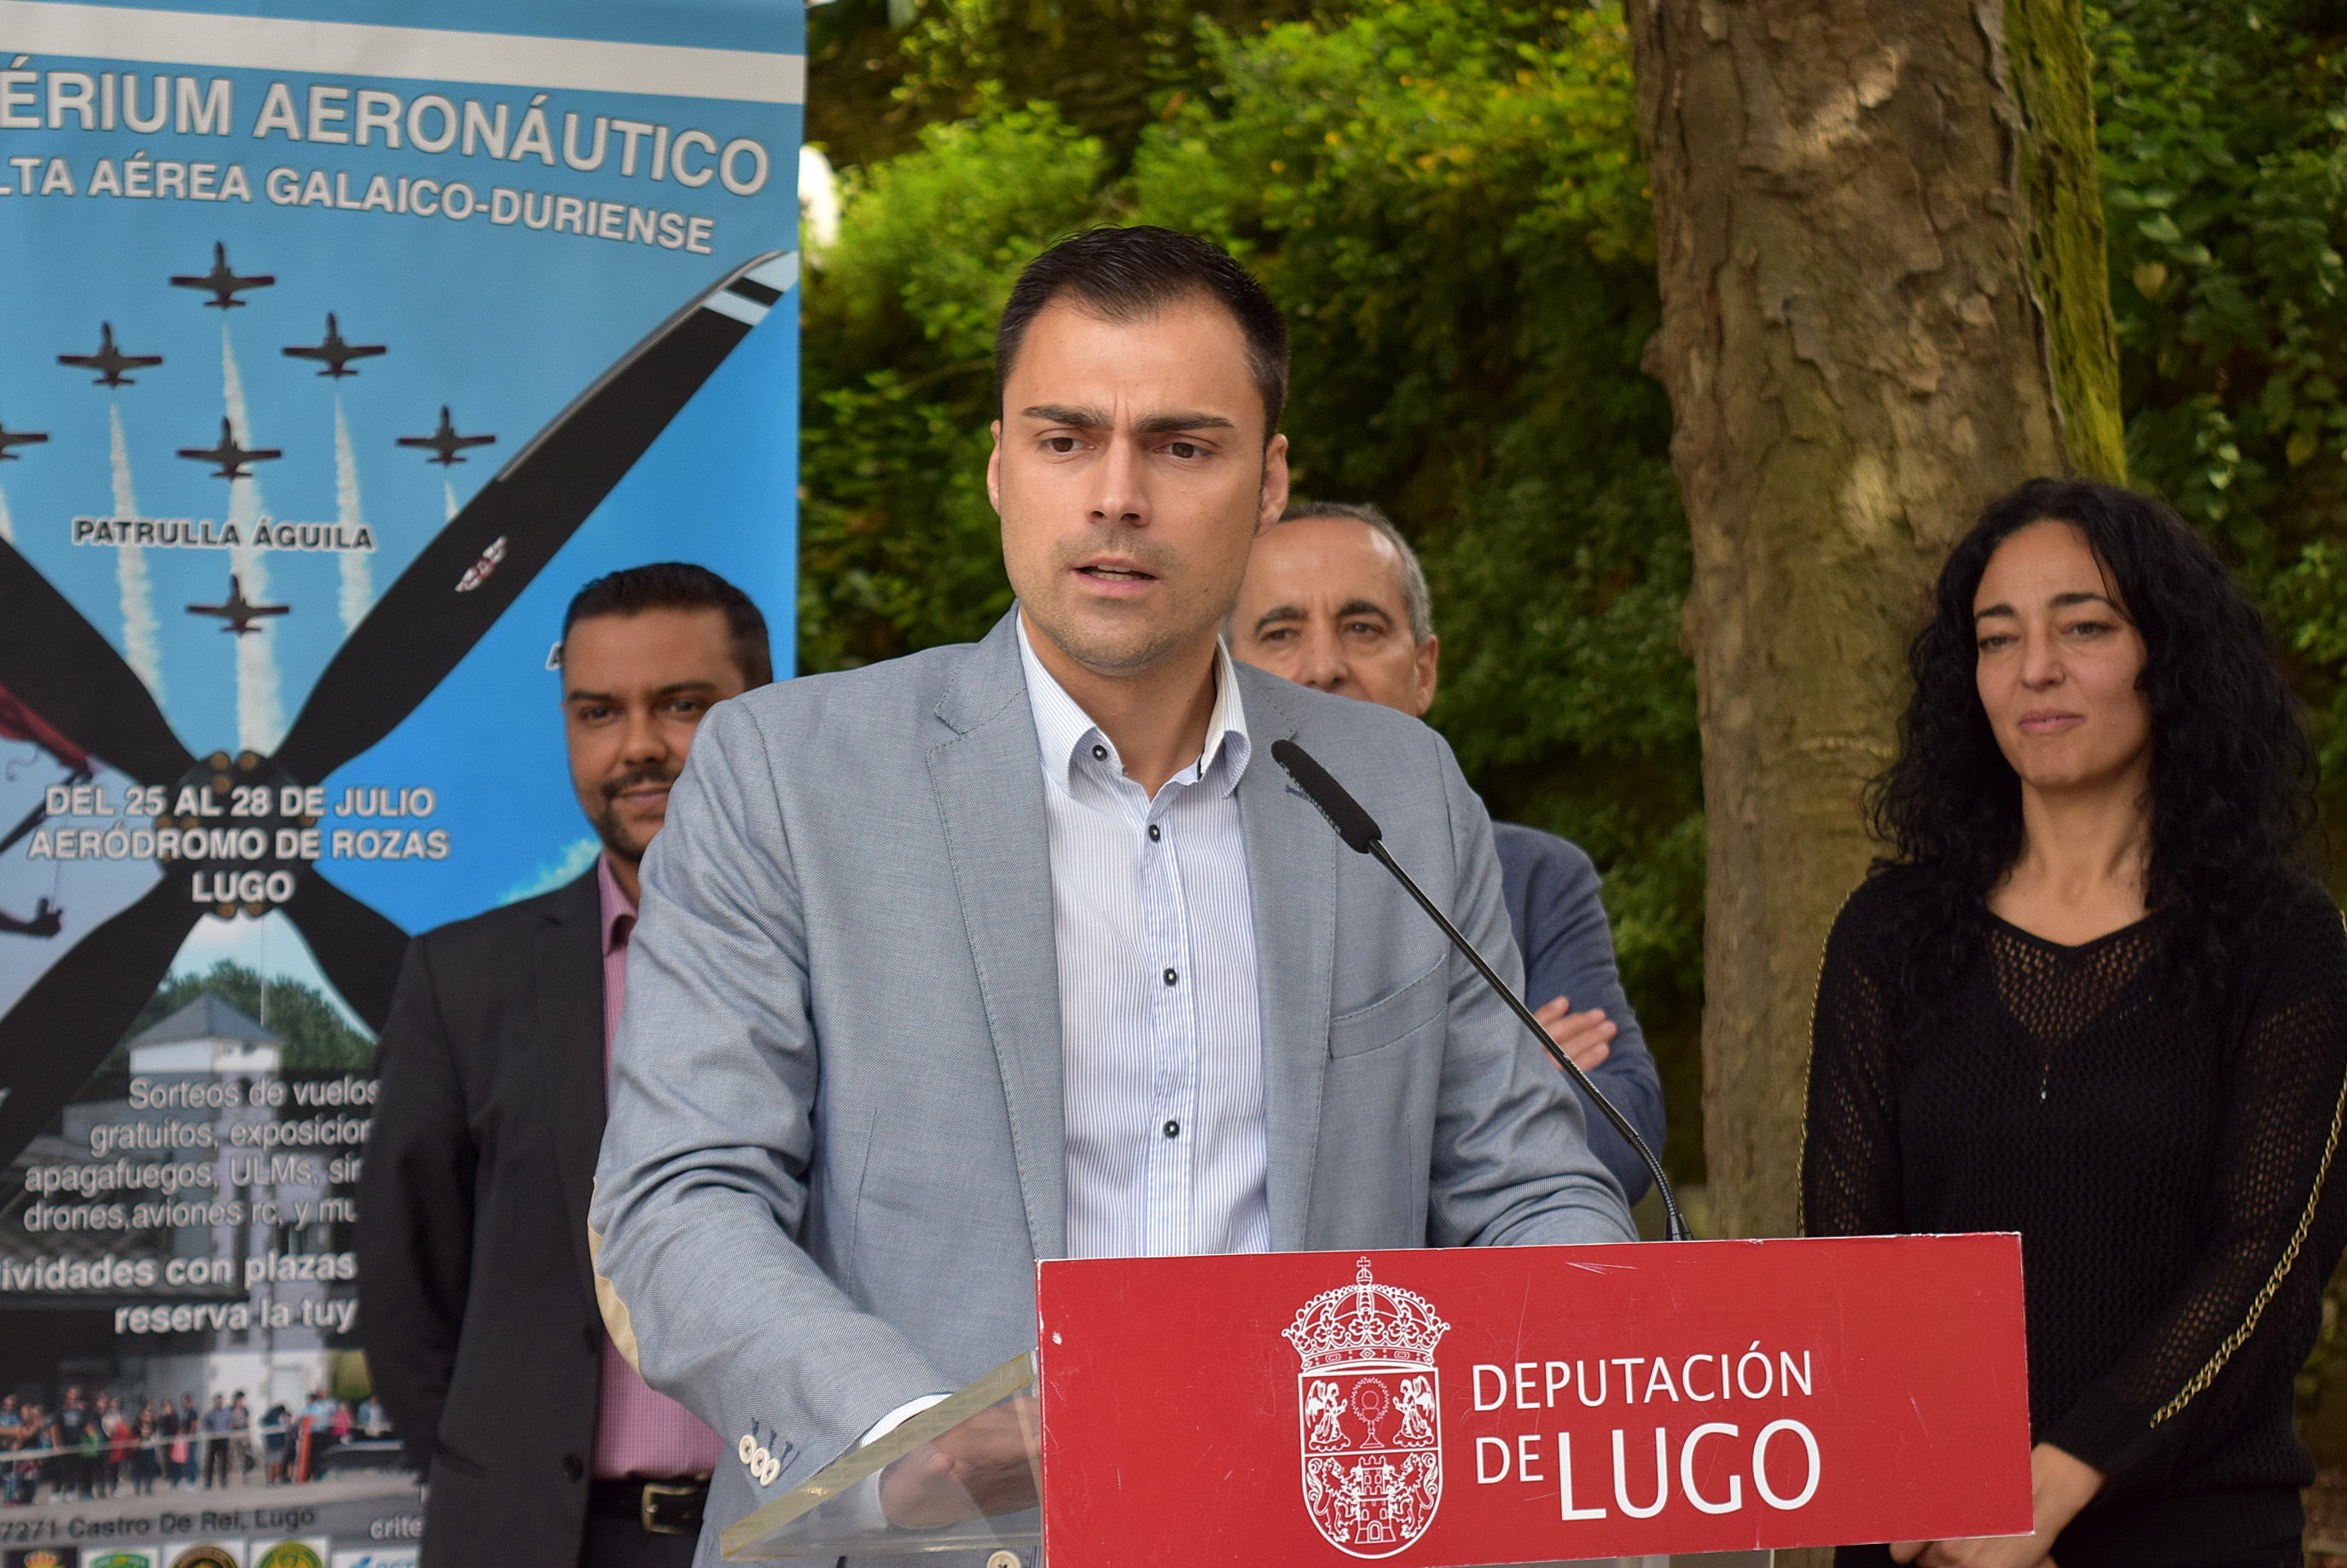 O XIV Criterium Aeronáutico chega a Lugo da man da Deputación 